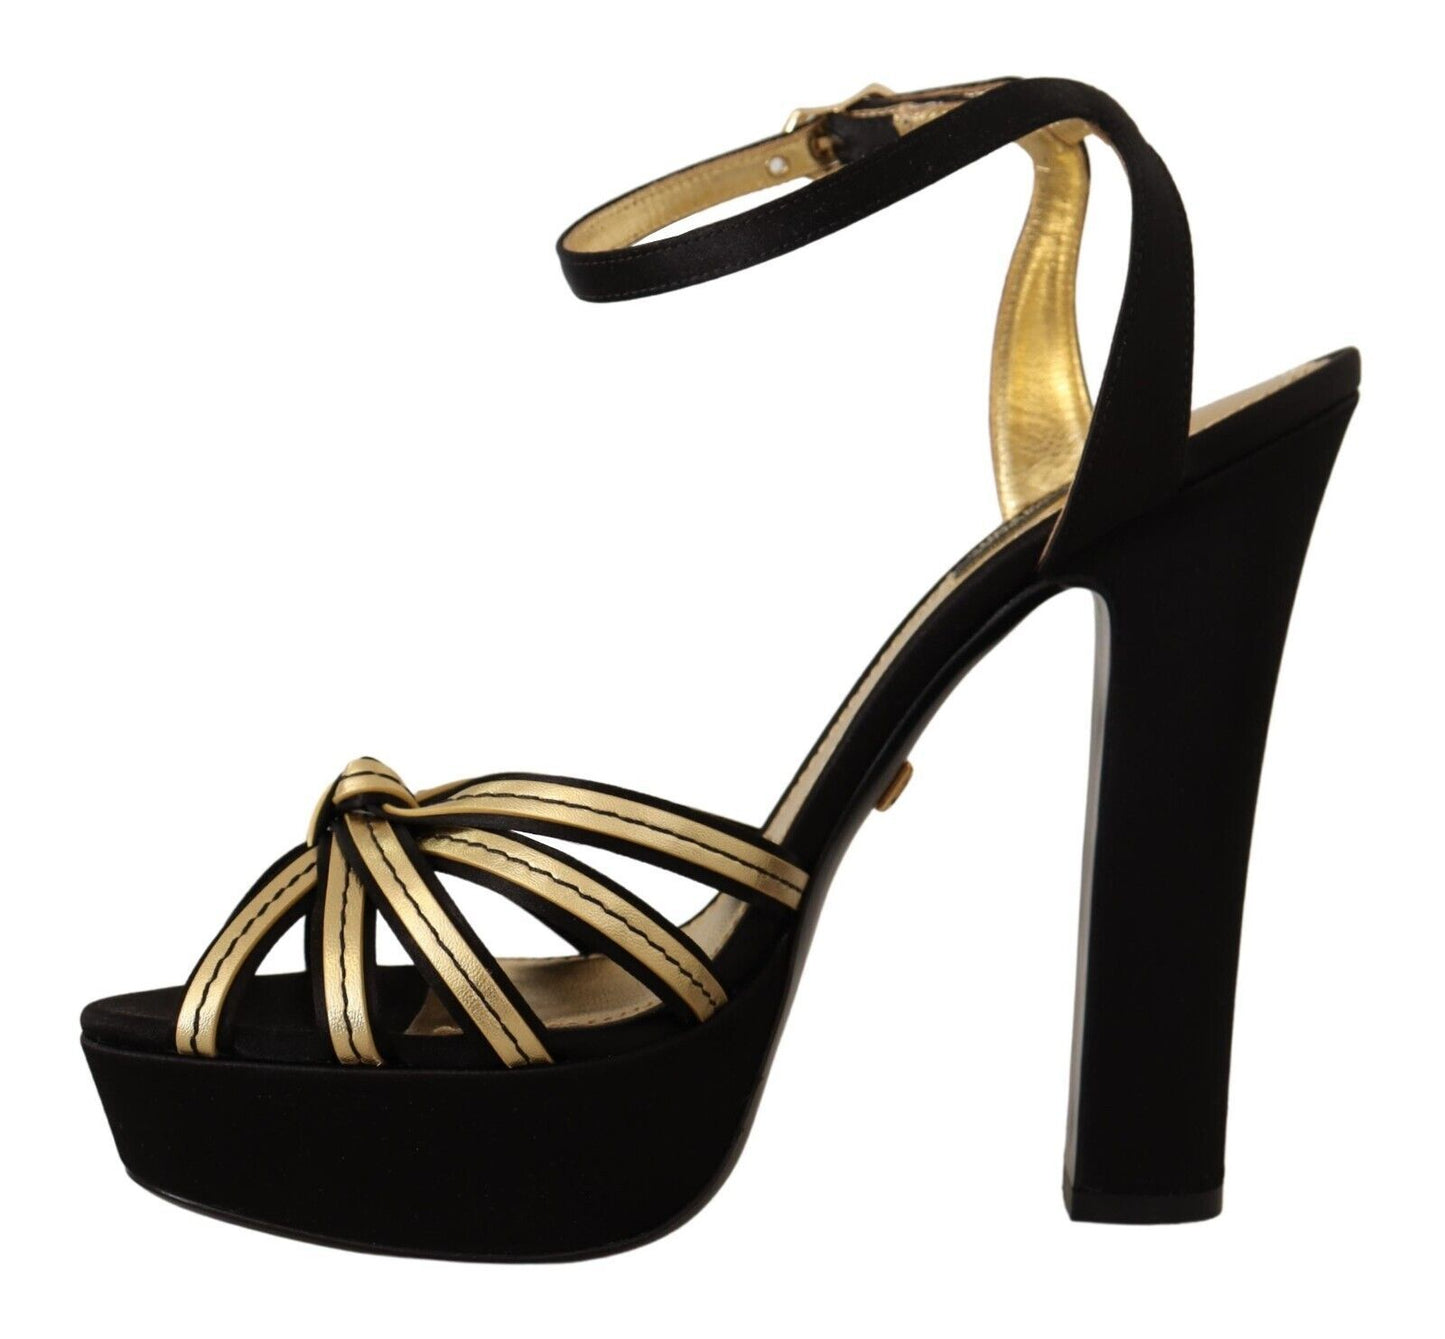 Elegant Black Gold Ankle Strap Heels Sandals